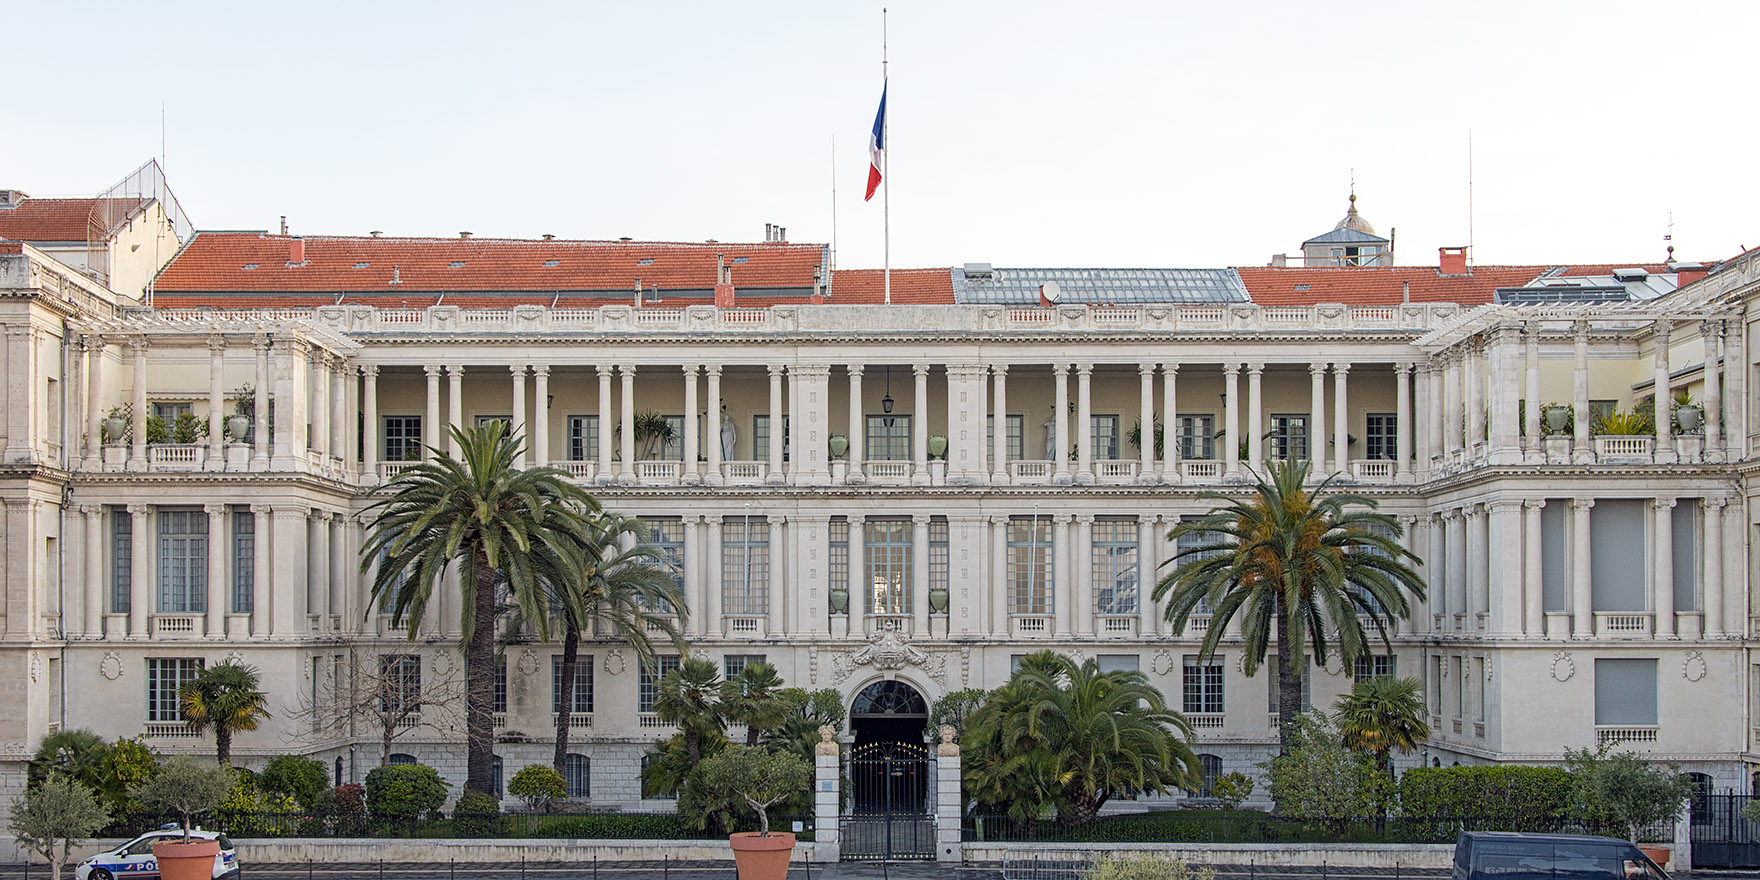 'Palais des ducs de Savoie', former seat of the Préfecture